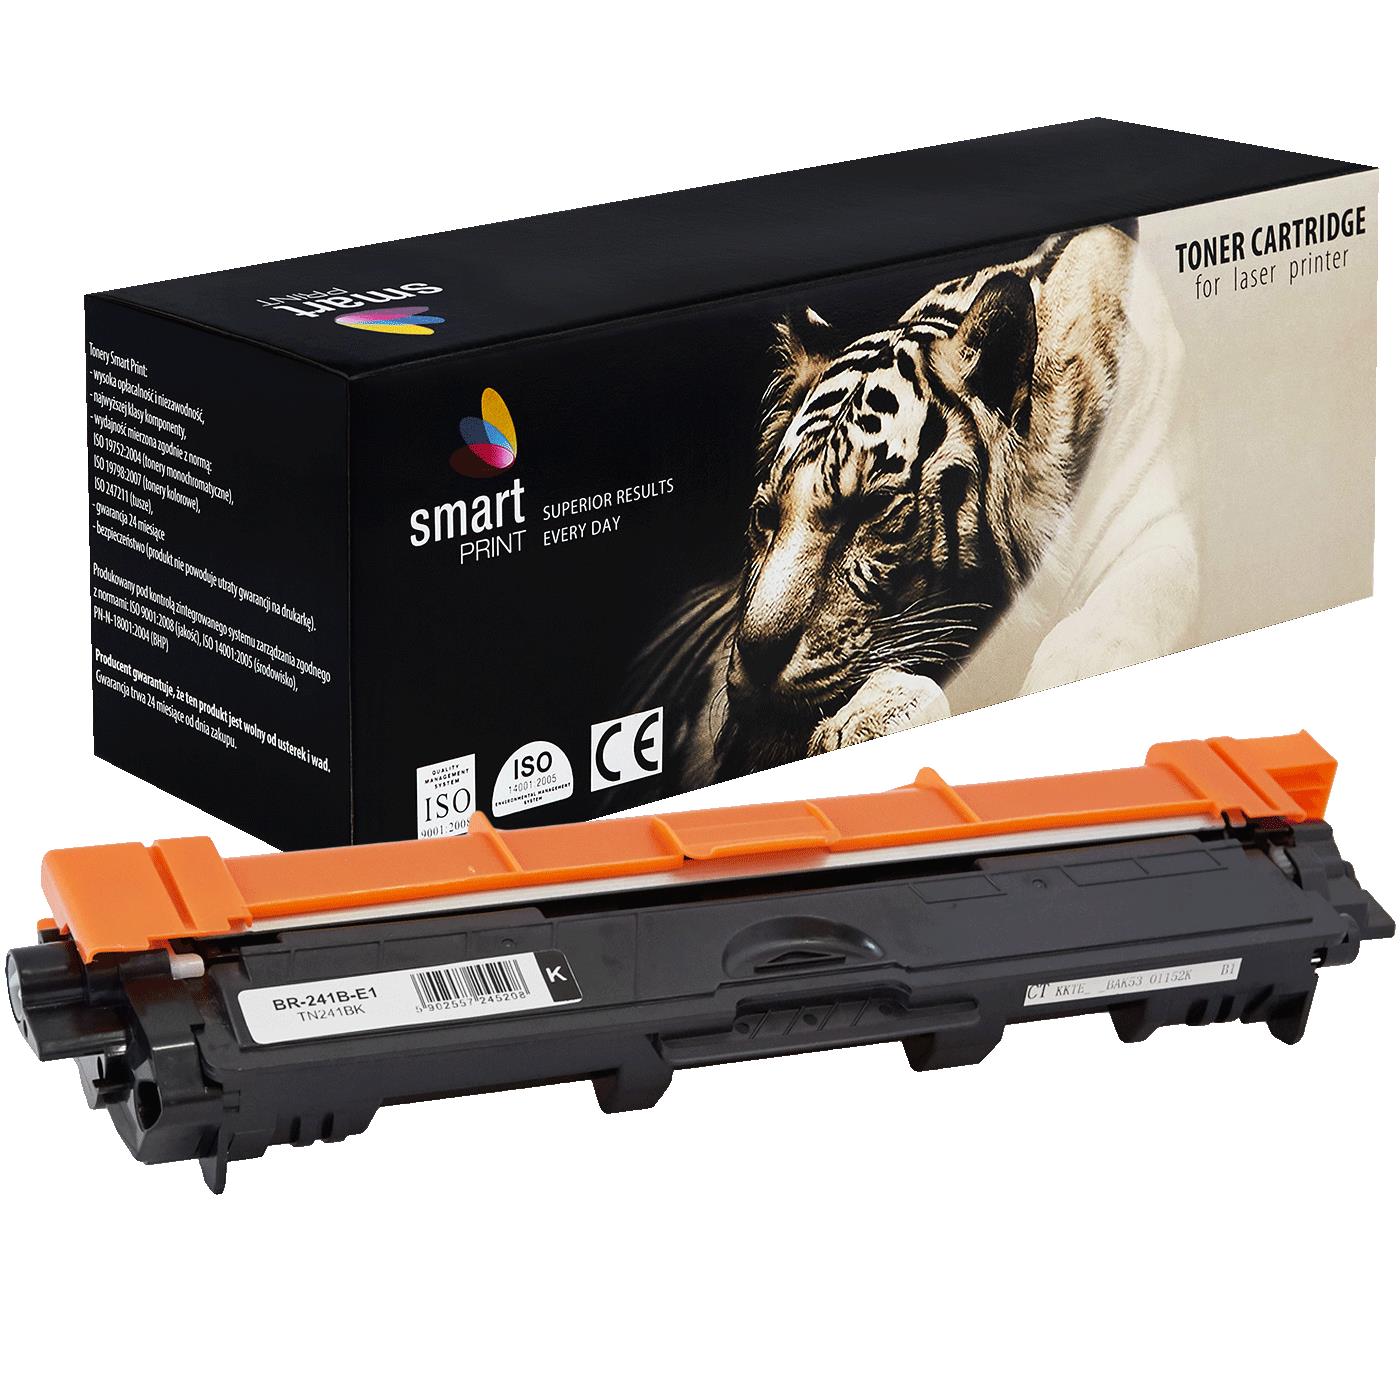 съвместима тонер касета за принтери и печатащи устройства на Brother MFC-9130 CW Toner BR-241B | TN241BK / TN-241 / TN245. Ниски цени, прецизно изпълнение, високо качество.